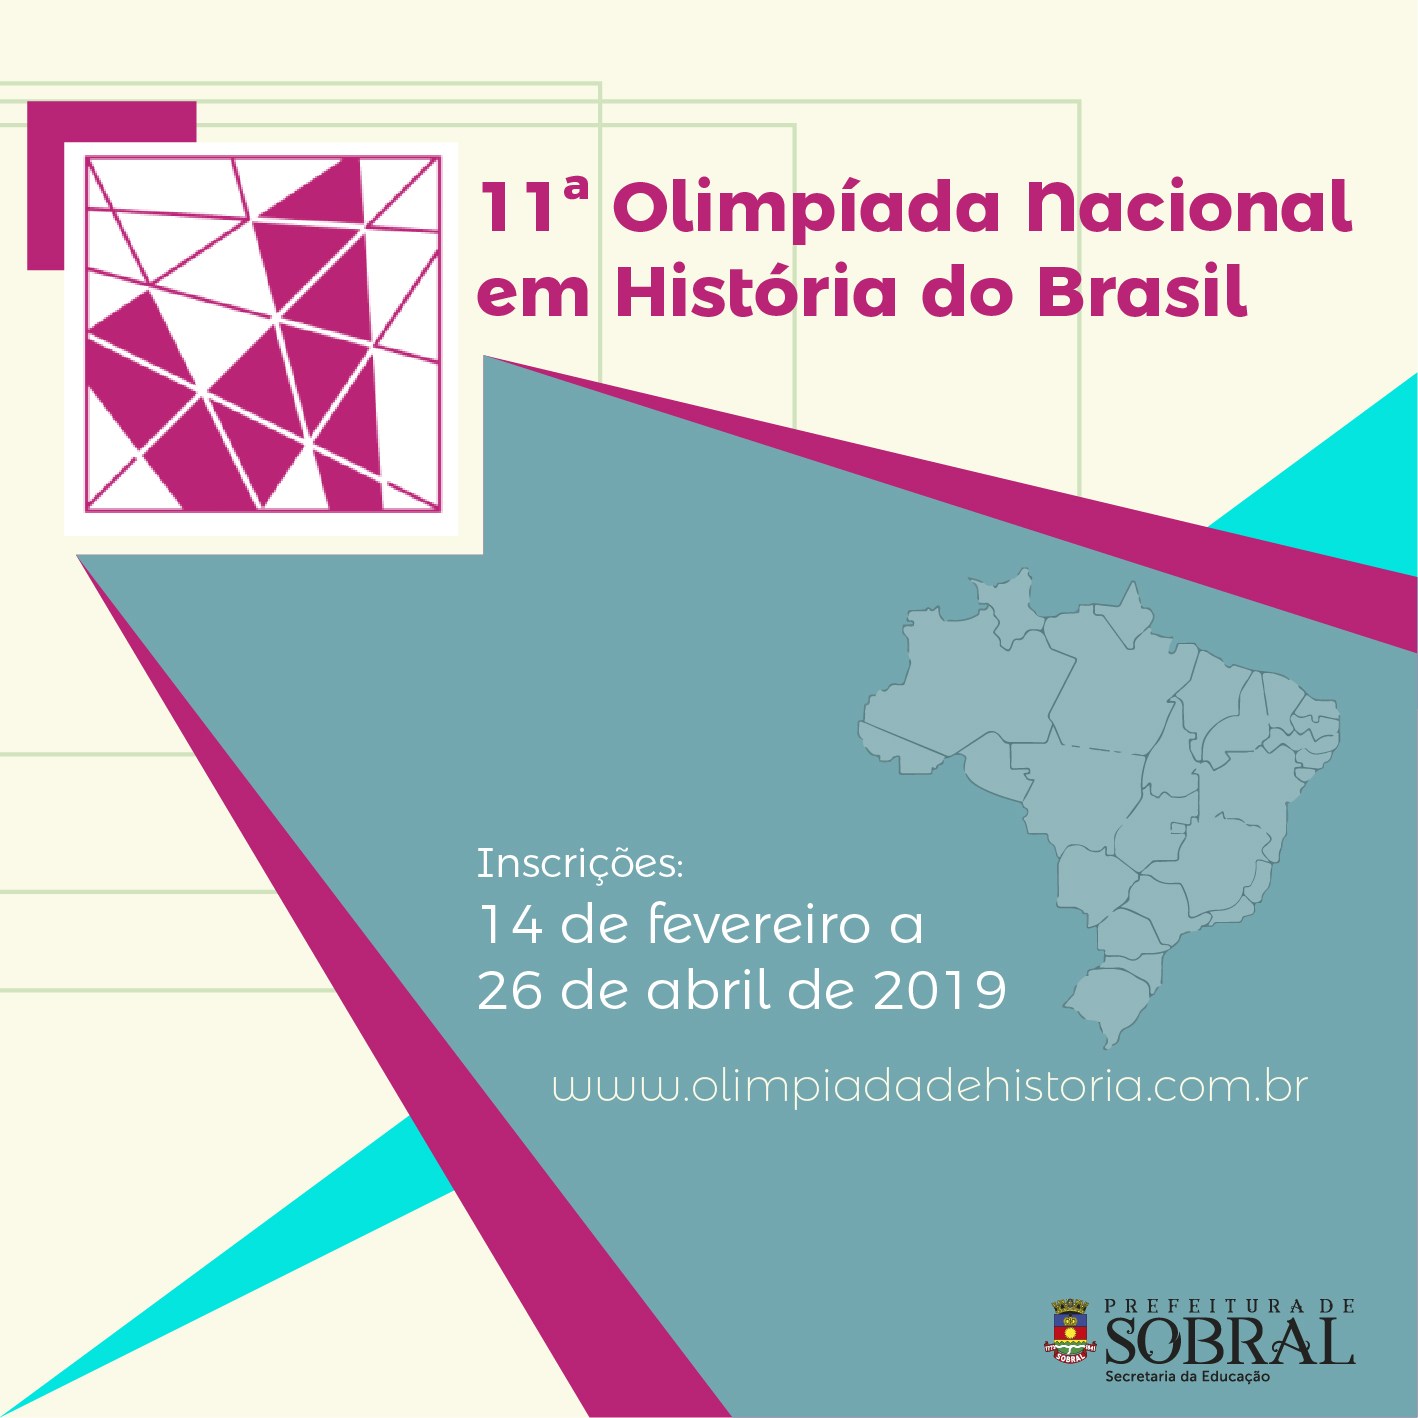 11ª Olimpíada Nacional em História do Brasil (ONHB)